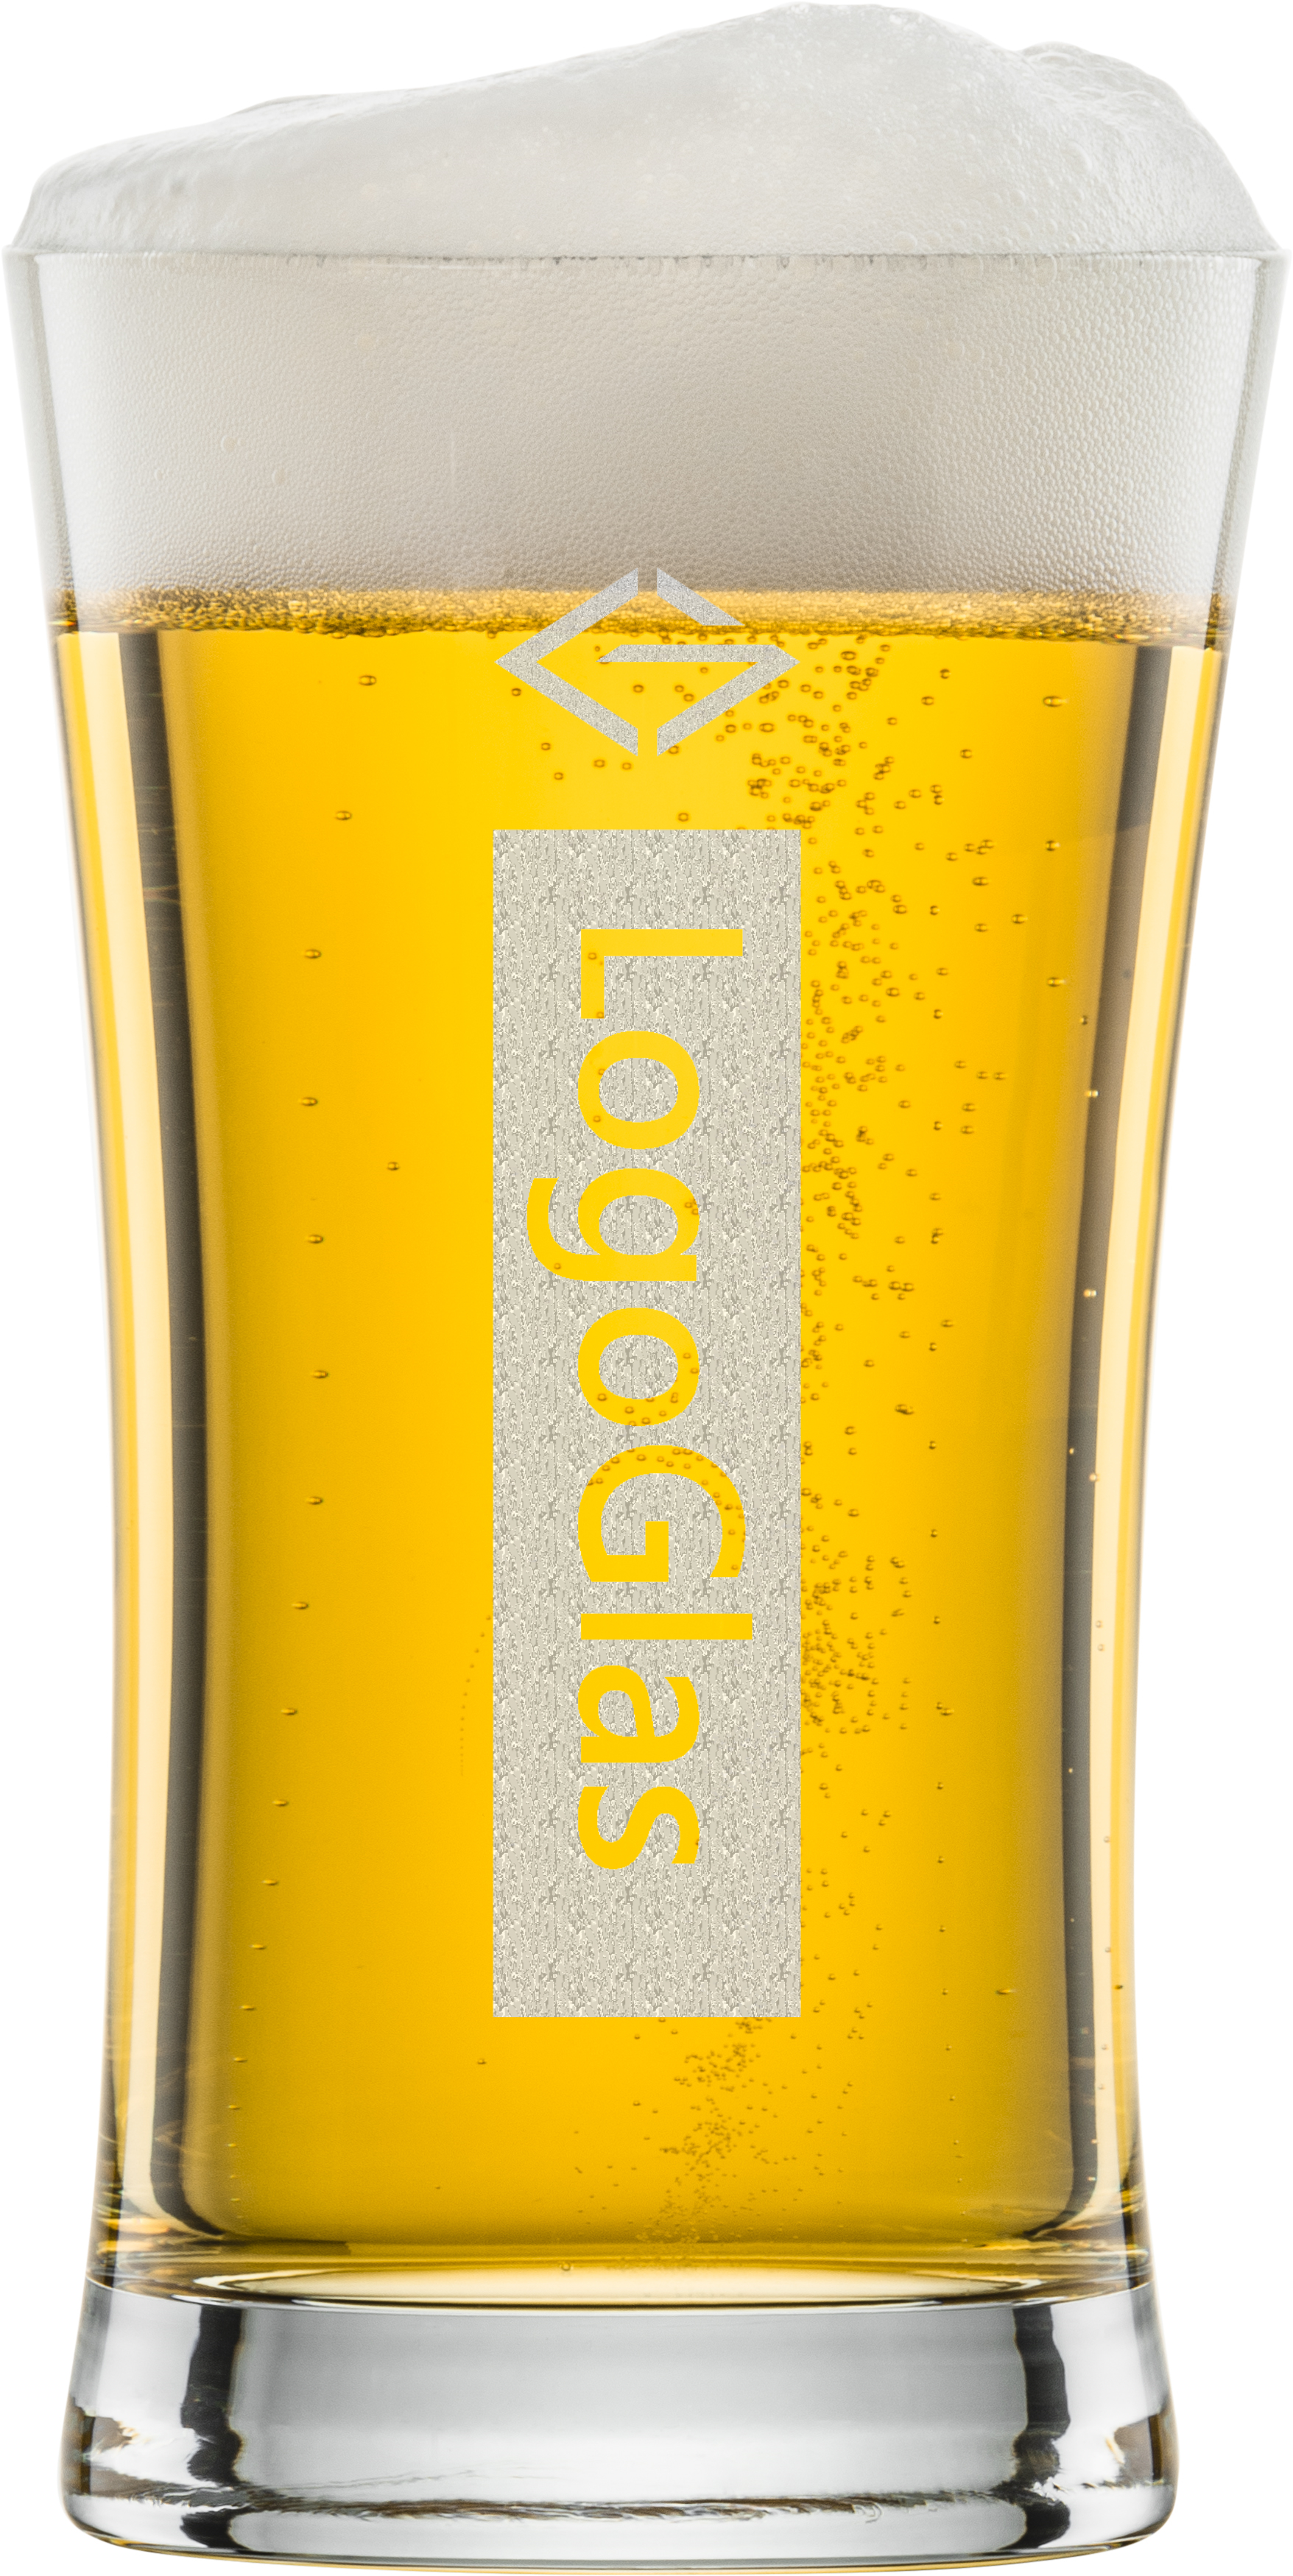 LOGO Schott Pintglas Beer Basic 0.5l Schott 